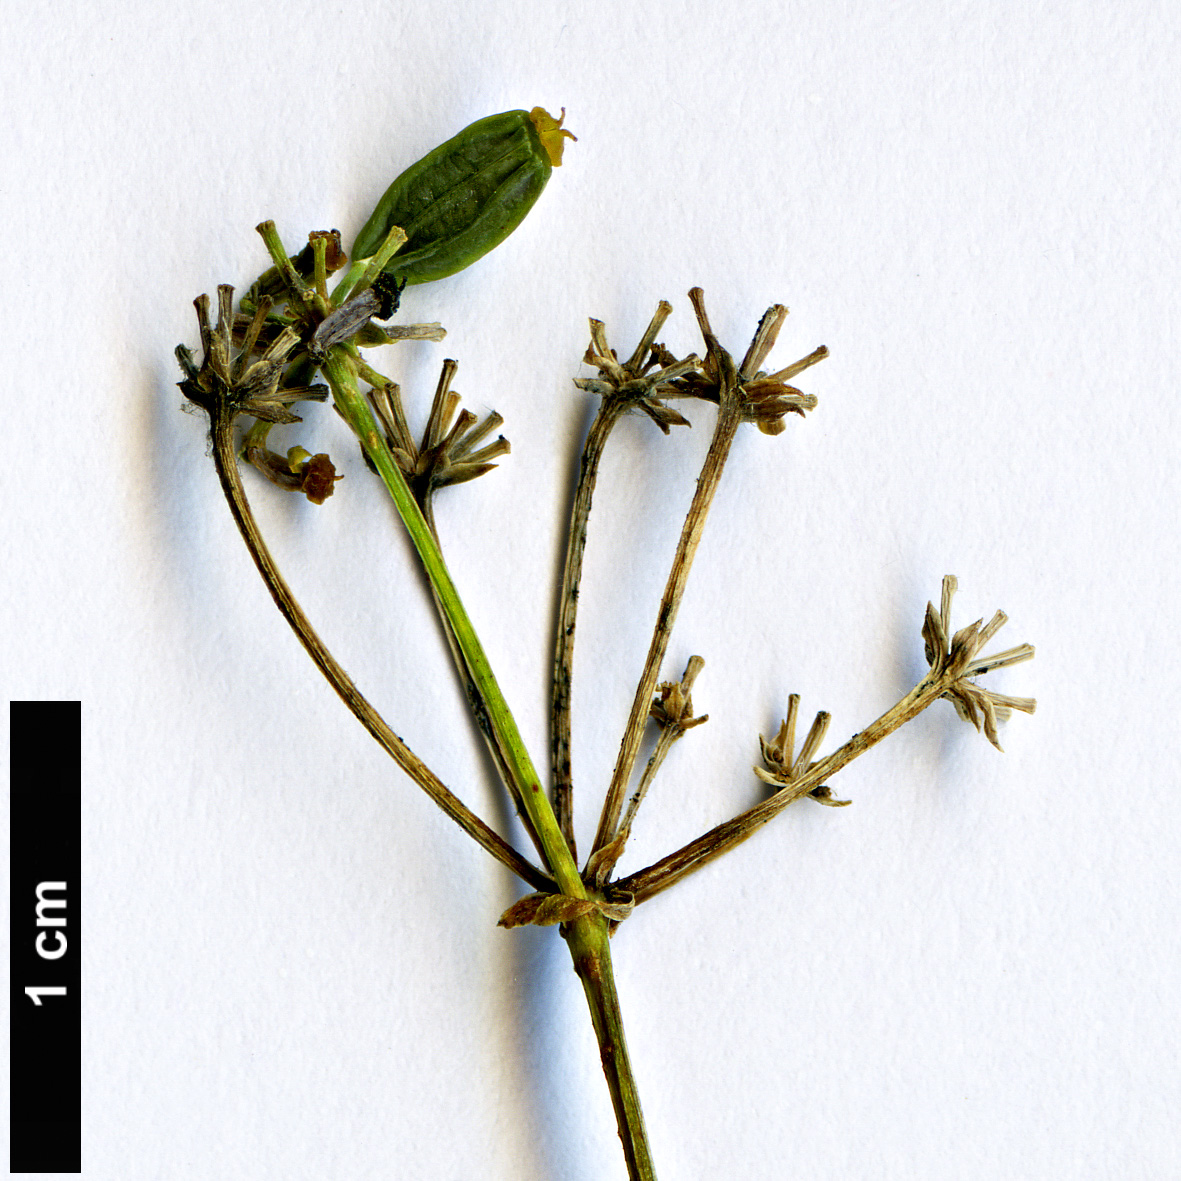 High resolution image: Family: Apiaceae - Genus: Bupleurum - Taxon: salicifolium  - SpeciesSub: subsp. salicifolium var. salicifolium